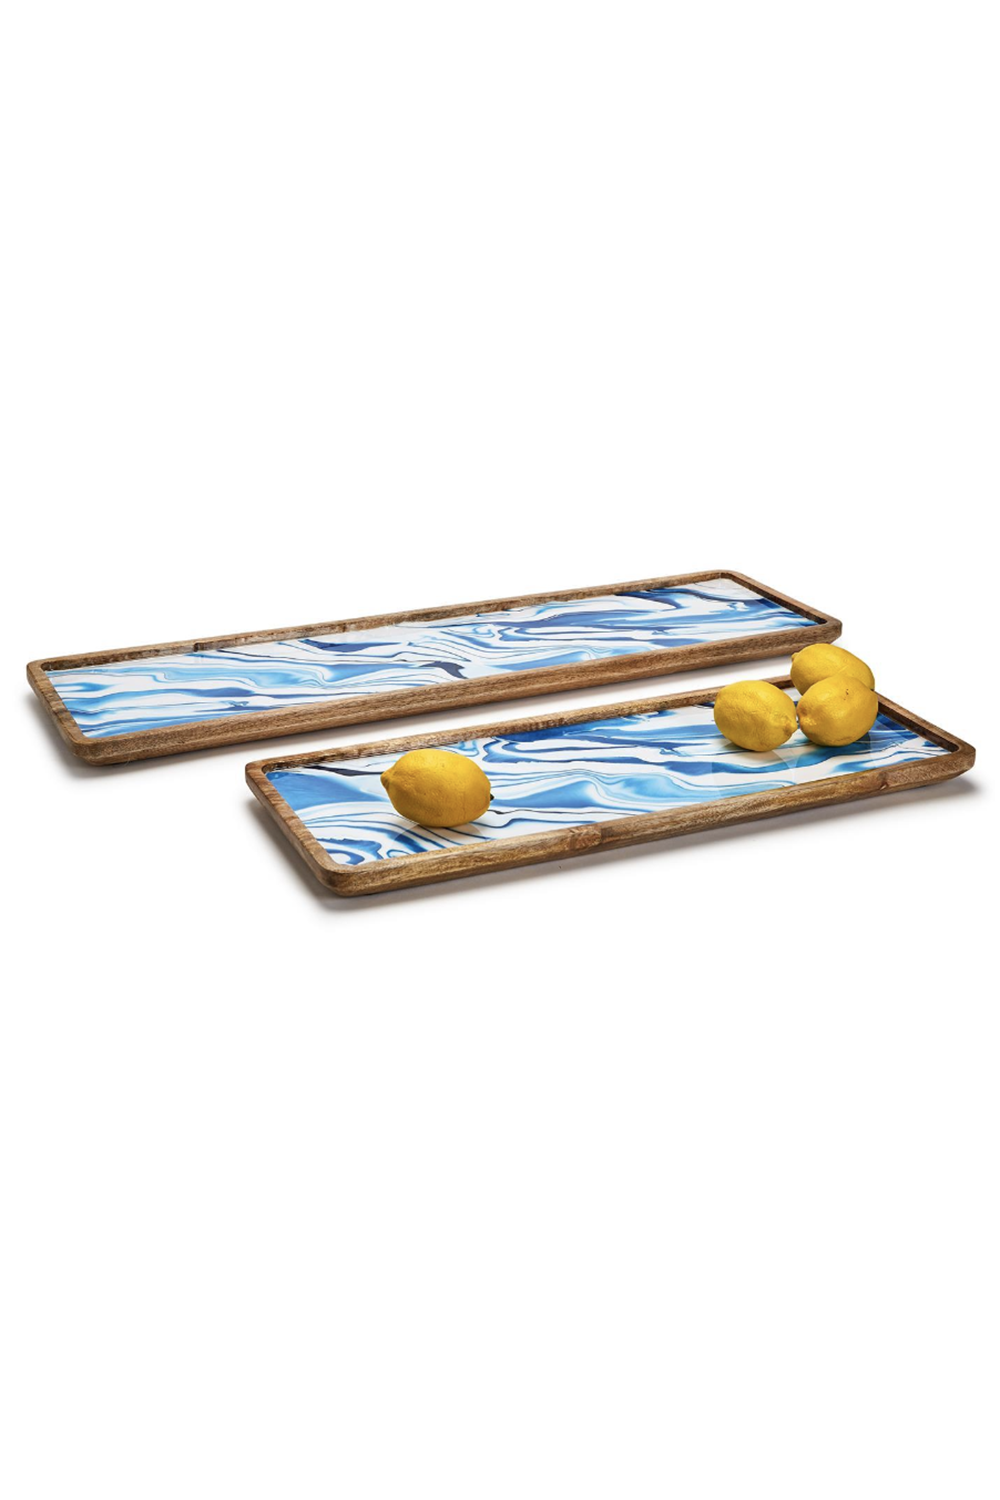 Aptware Blue Wooden Long Tray